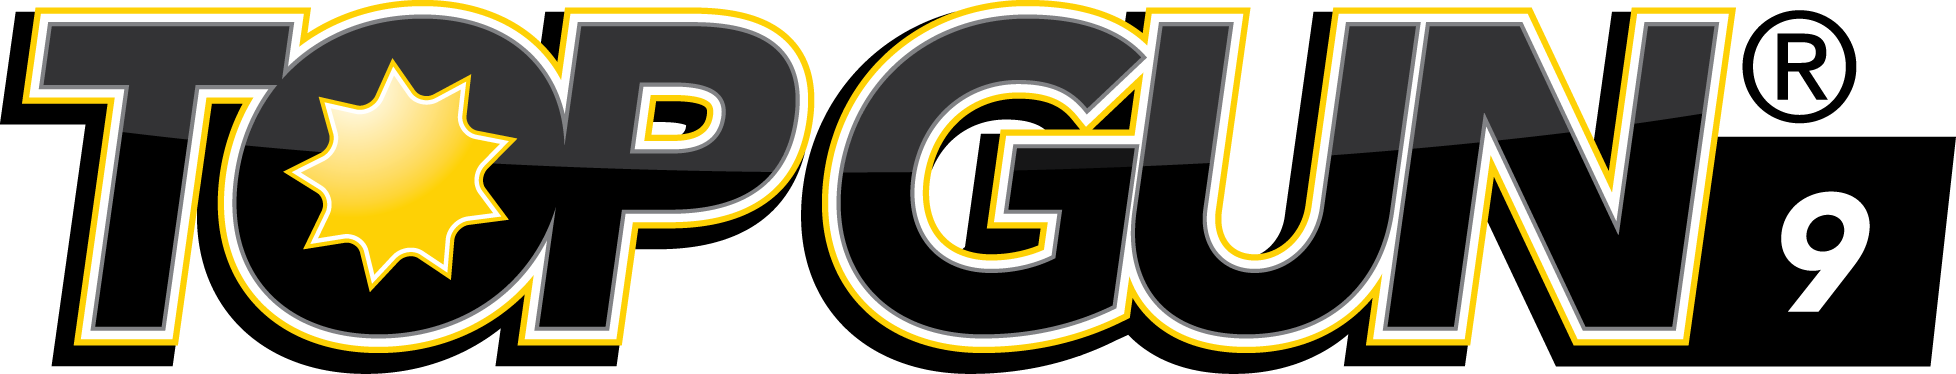 Top Gun 9 Logo